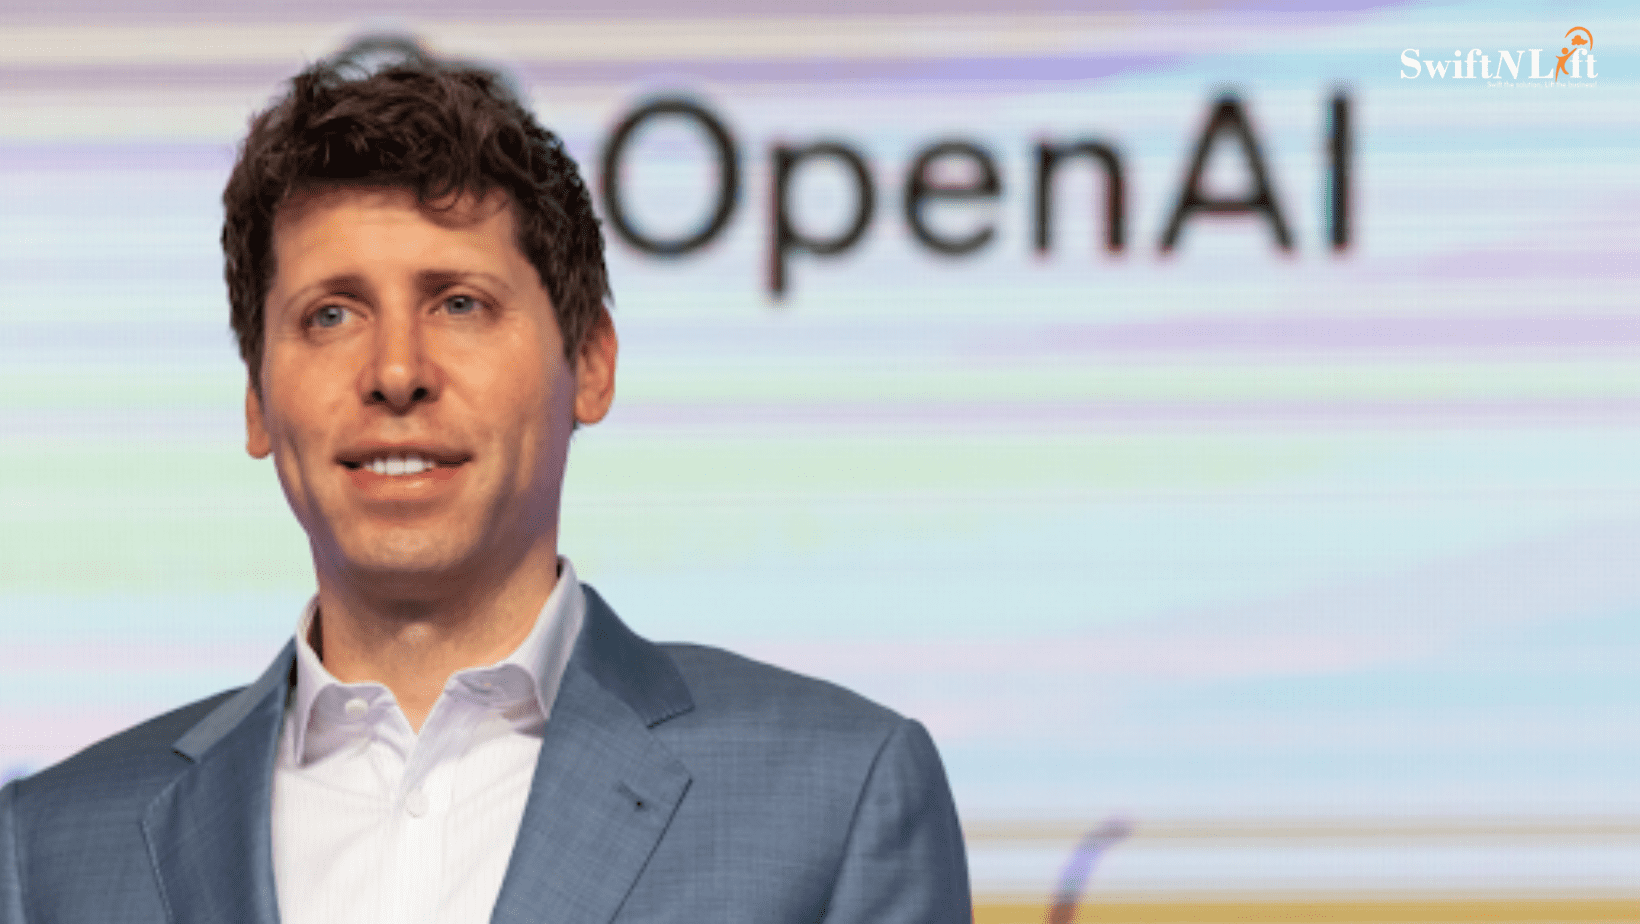 Tale of OpenAI